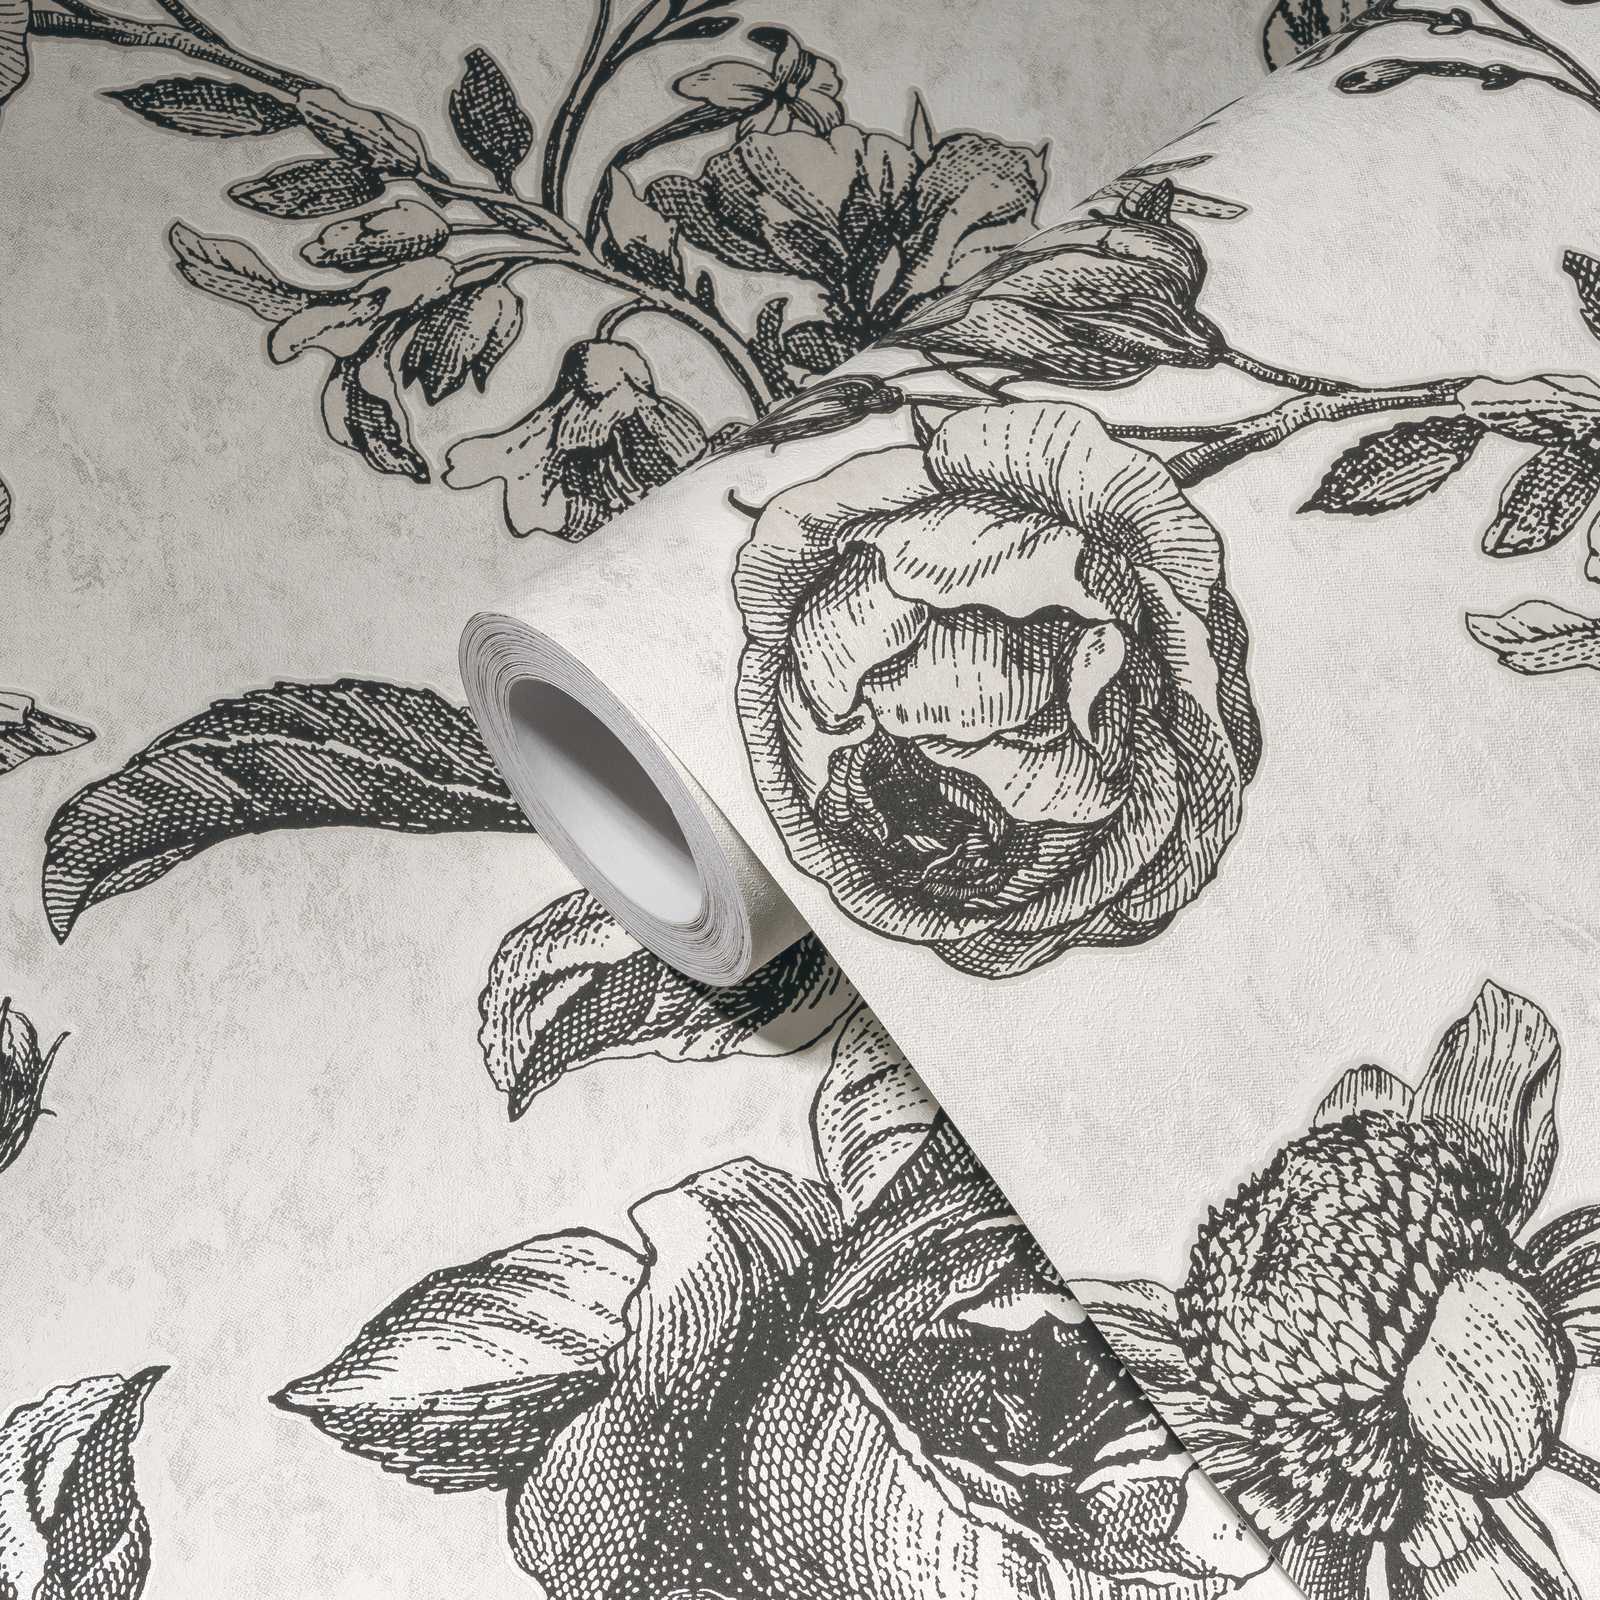             noir-crème papier peint roses motif fleurs - blanc, noir, gris
        